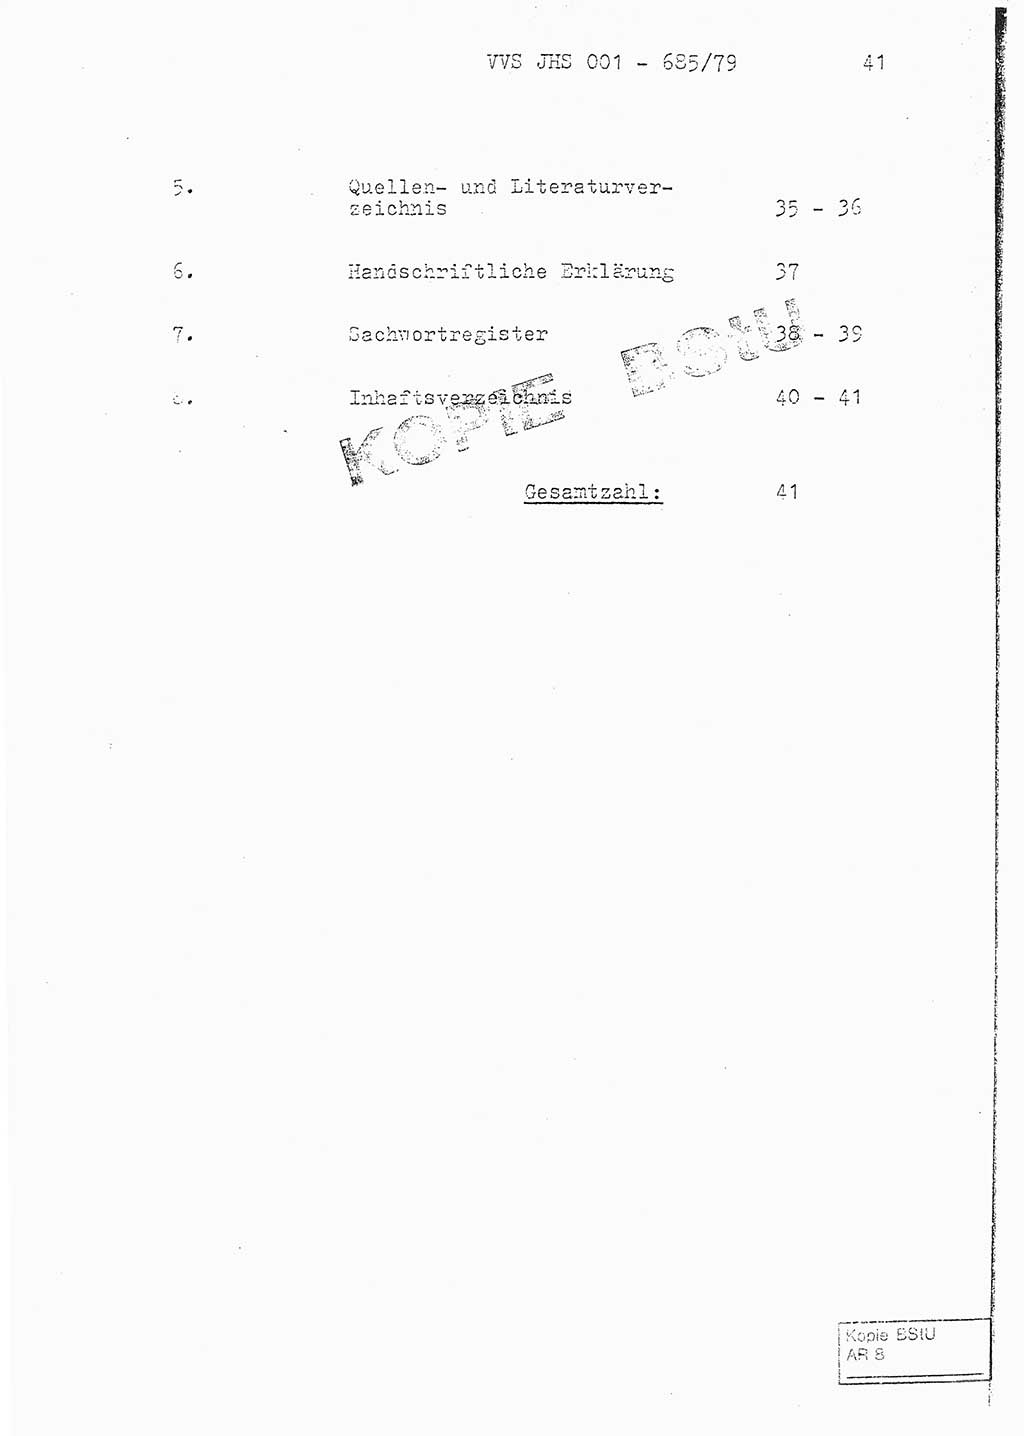 Fachschulabschlußarbeit Oberleutnant Helmut Peckruhn (BV Bln. Abt. ⅩⅣ), Ministerium für Staatssicherheit (MfS) [Deutsche Demokratische Republik (DDR)], Juristische Hochschule (JHS), Vertrauliche Verschlußsache (VVS) 001-685/79, Potsdam 1979, Seite 41 (FS-Abschl.-Arb. MfS DDR JHS VVS 001-685/79 1979, S. 41)